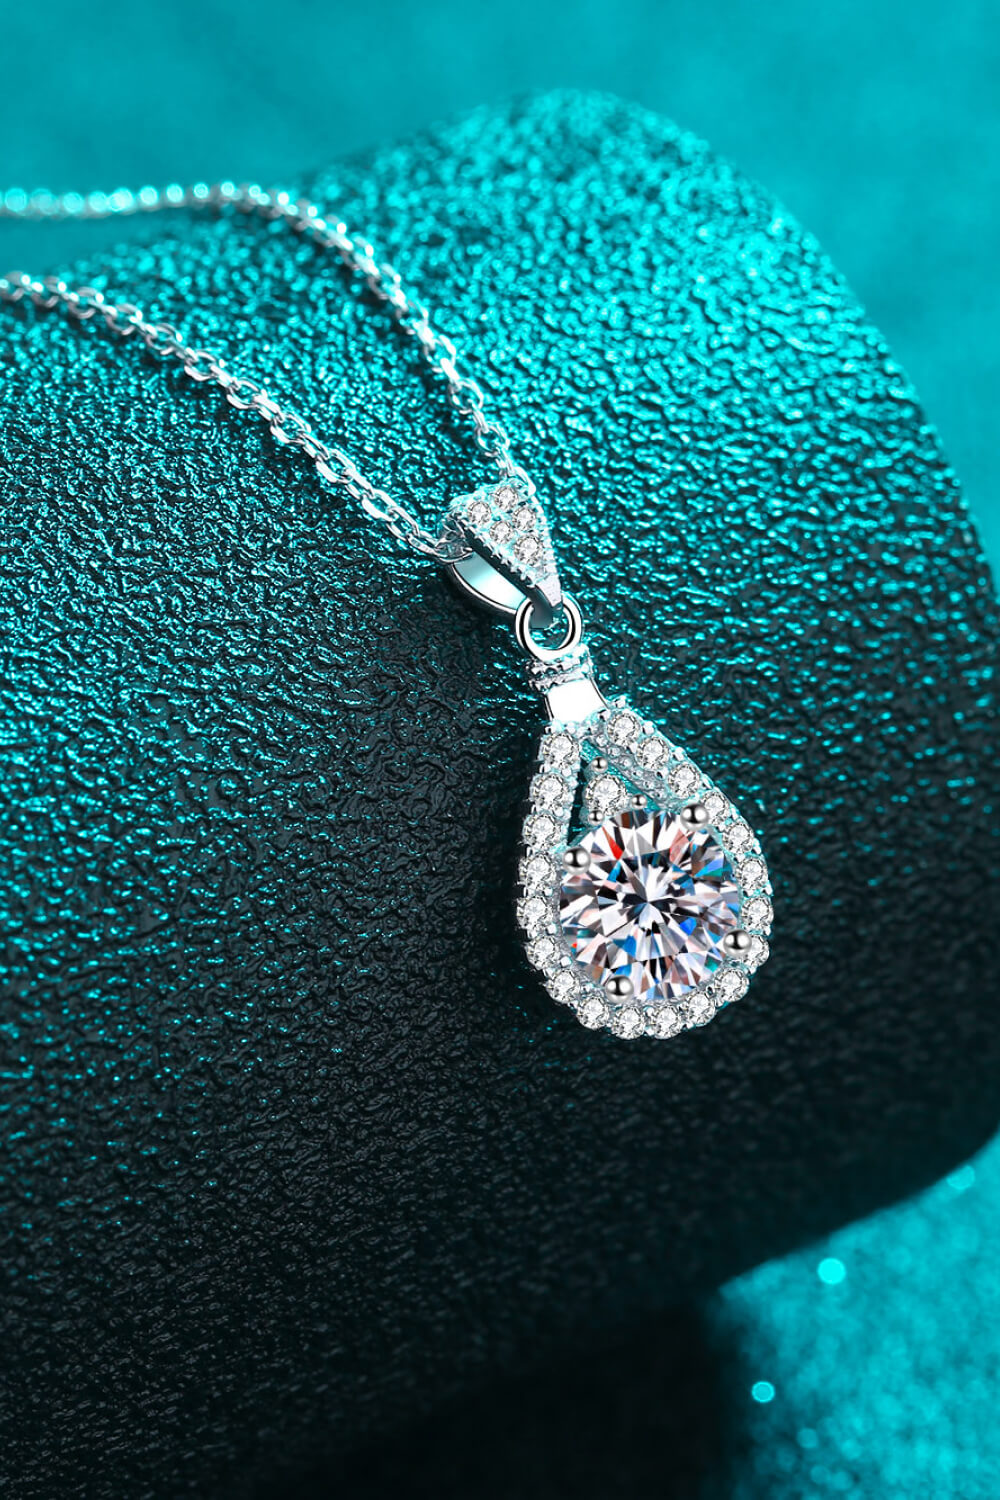 1 Carat Moissanite Teardrop Pendant Chain Necklace - DromedarShop.com Online Boutique